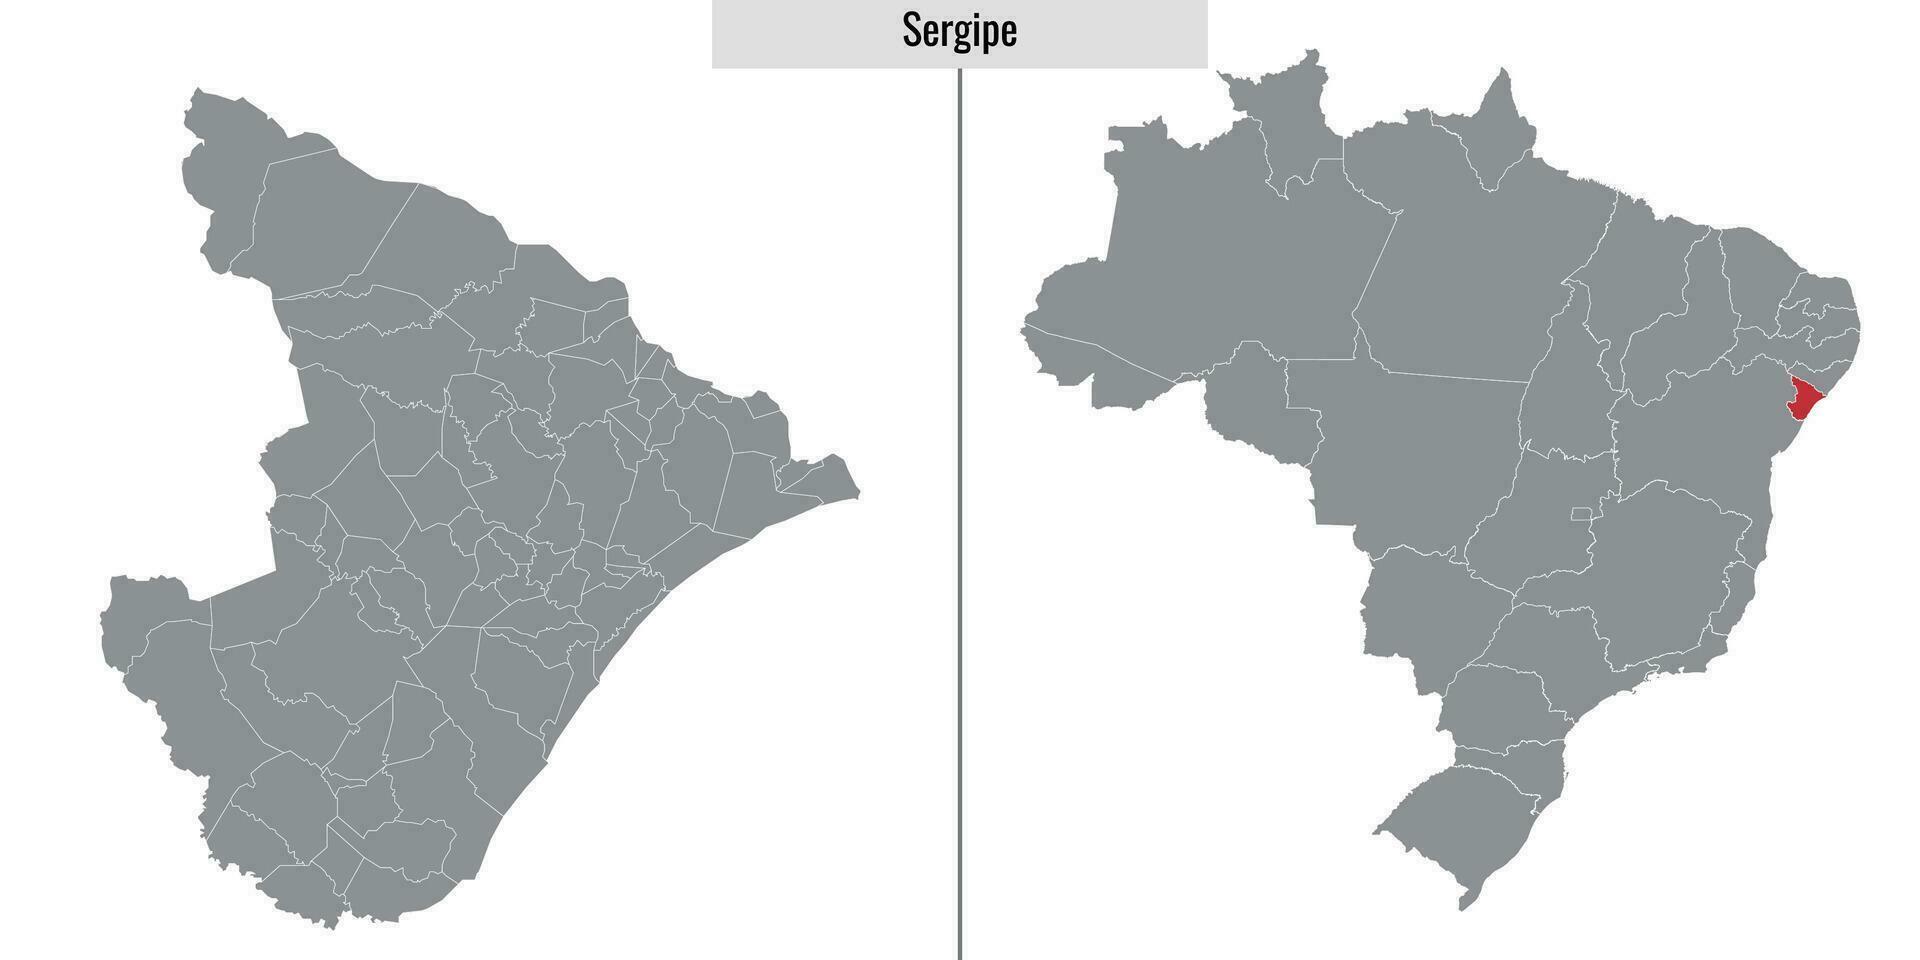 mapa estado de Brasil vector